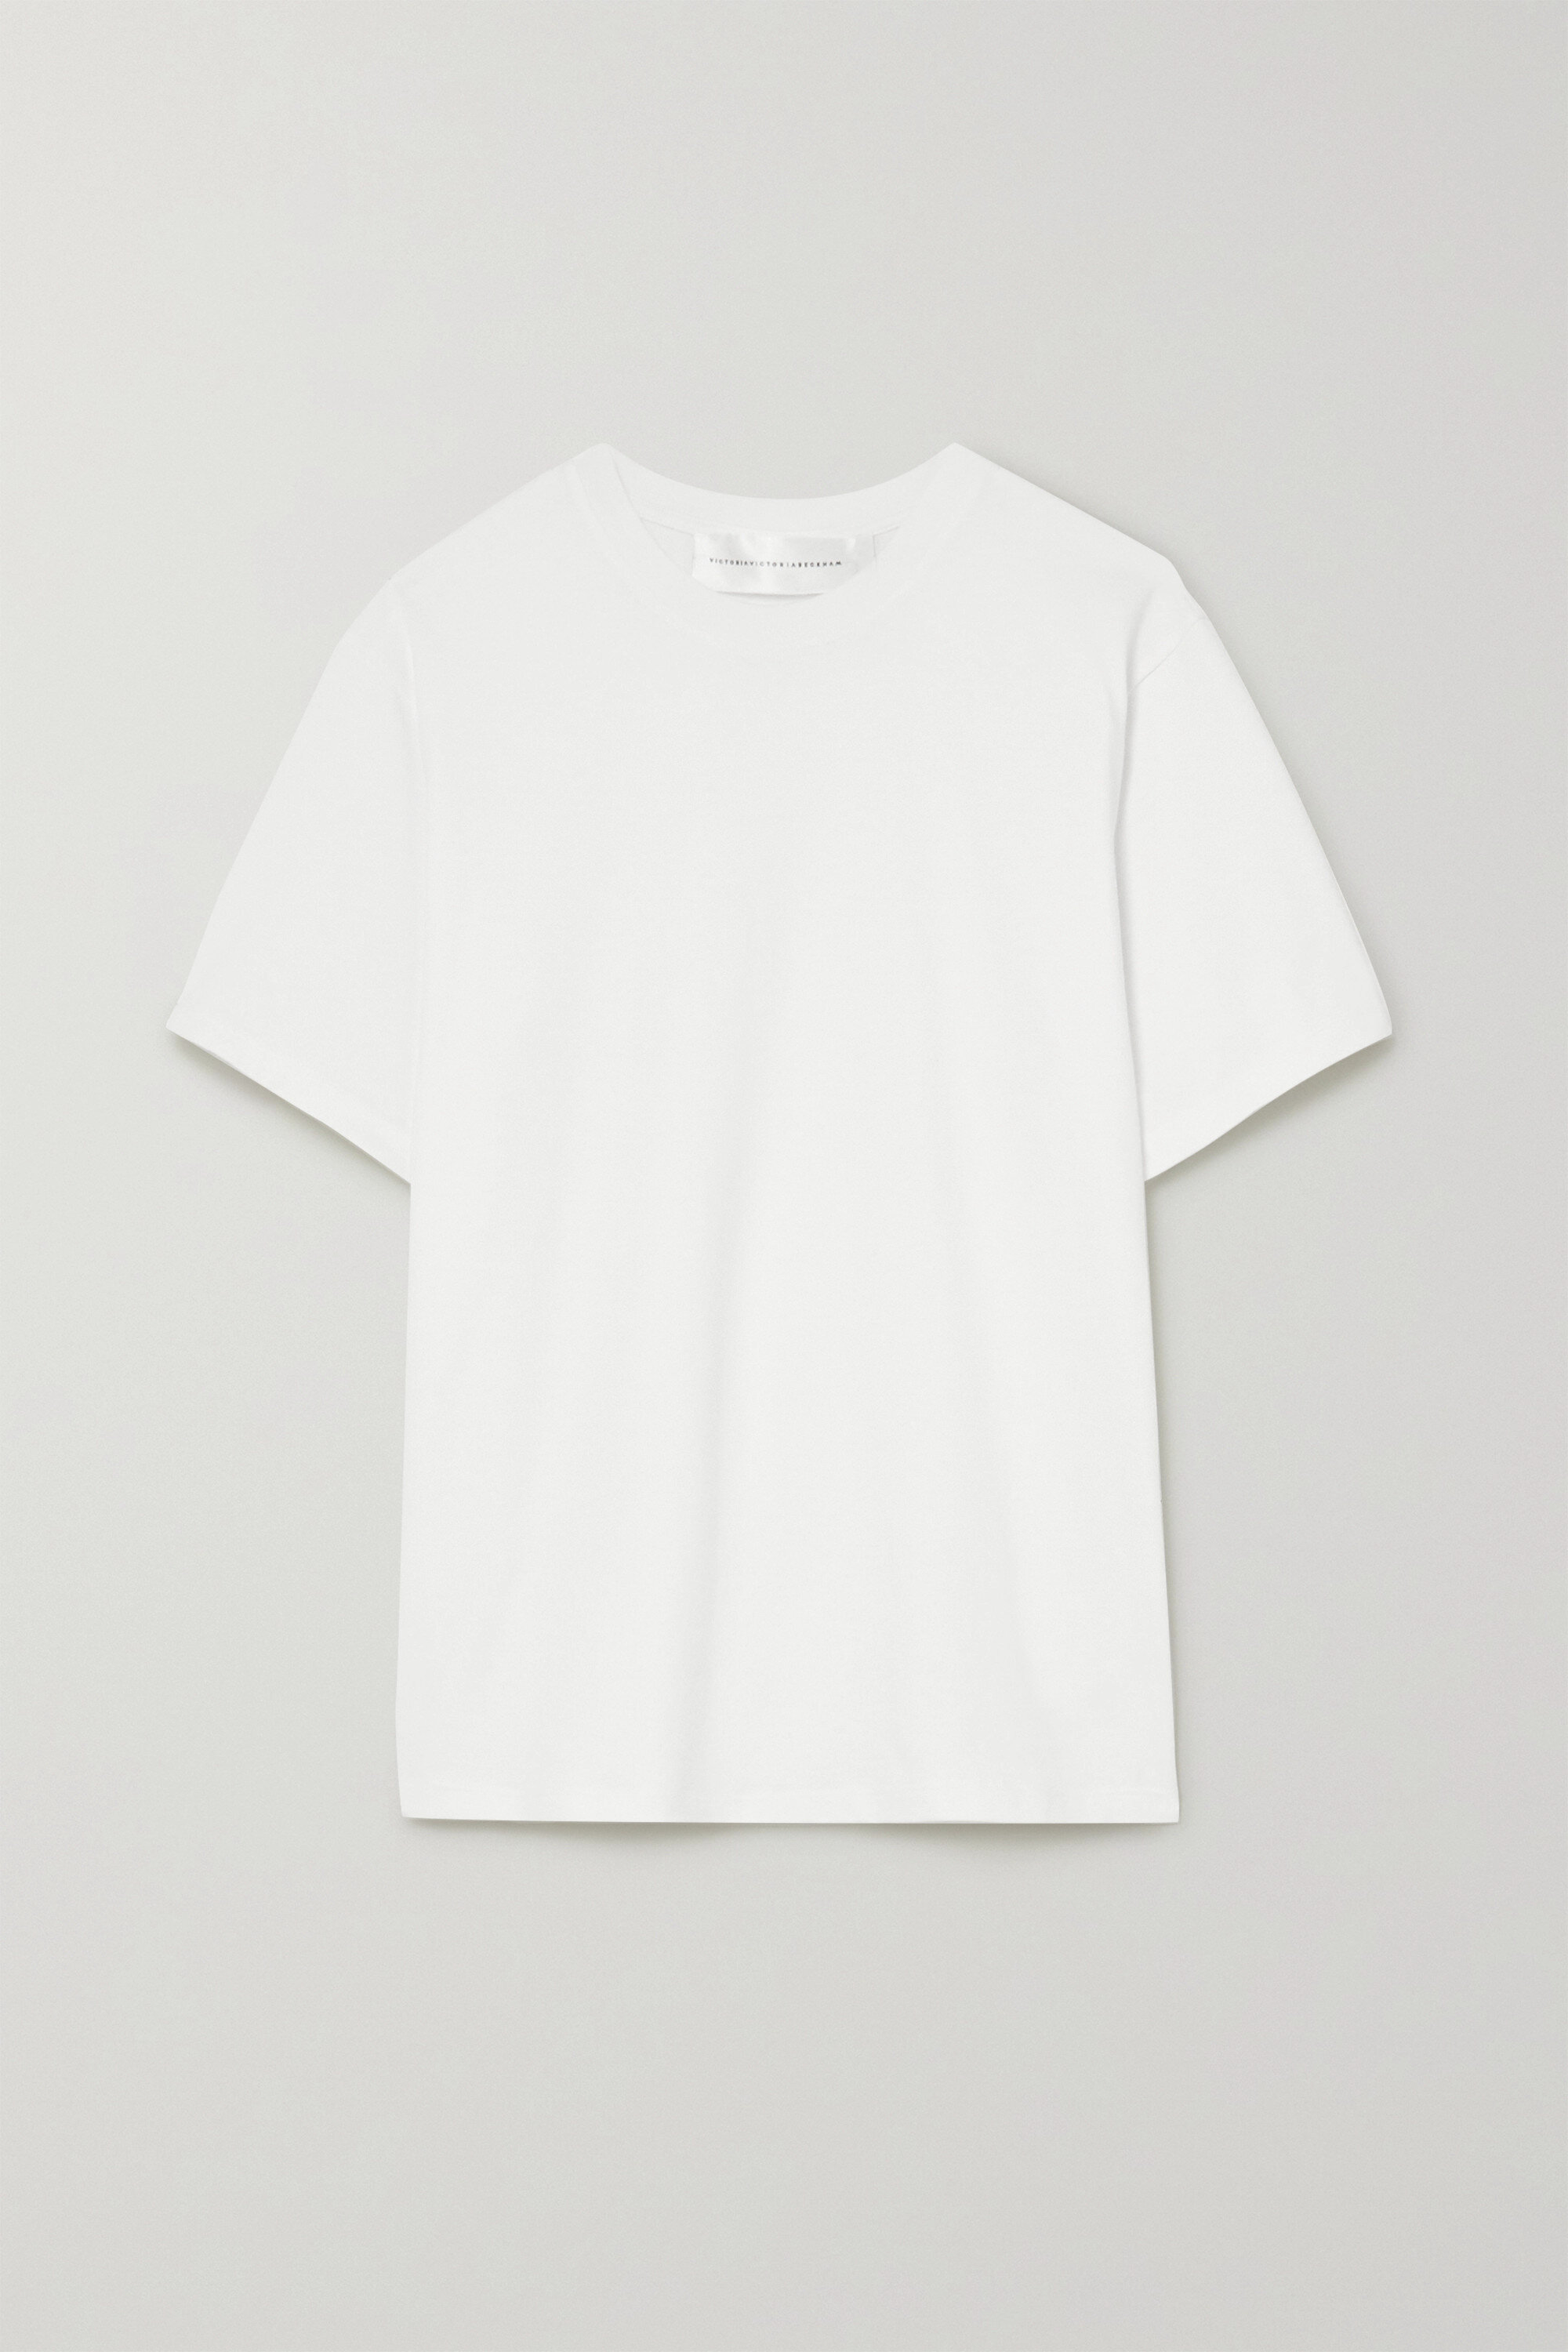 VVB, T-Shirt, £90